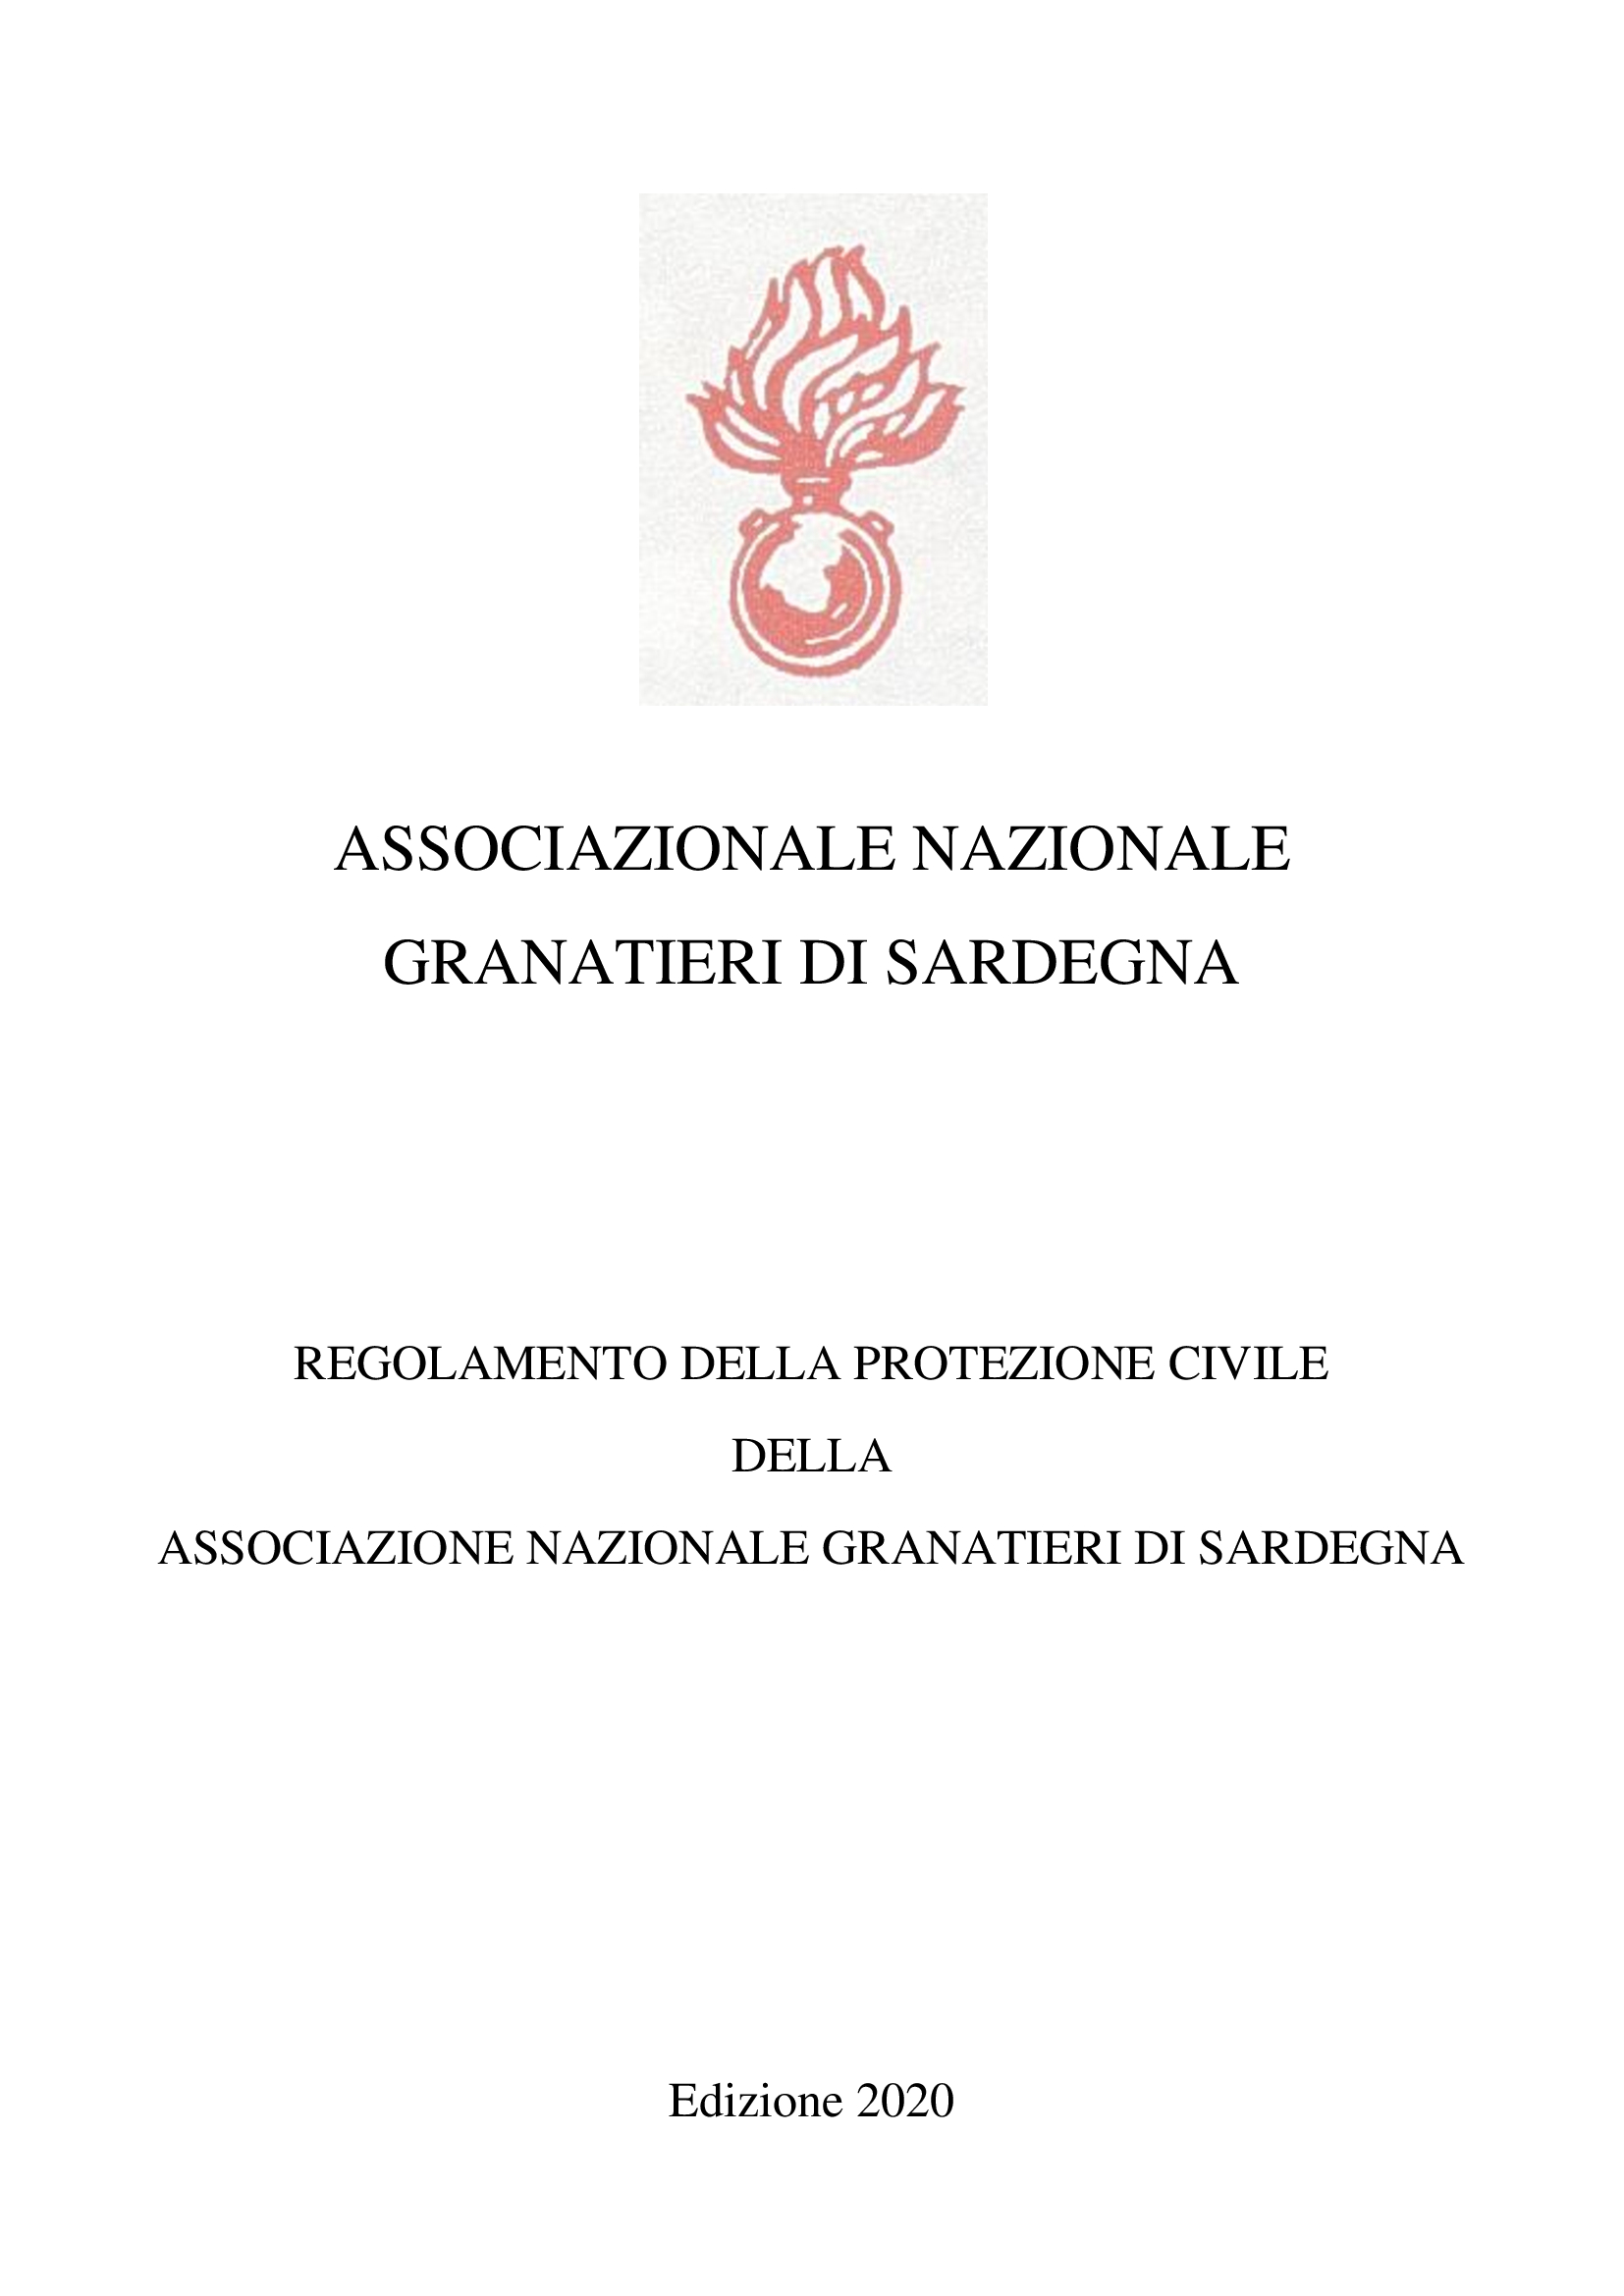 Regolamento della Protezione Civile dell’Associazione nazionale Granatieri di Sardegna